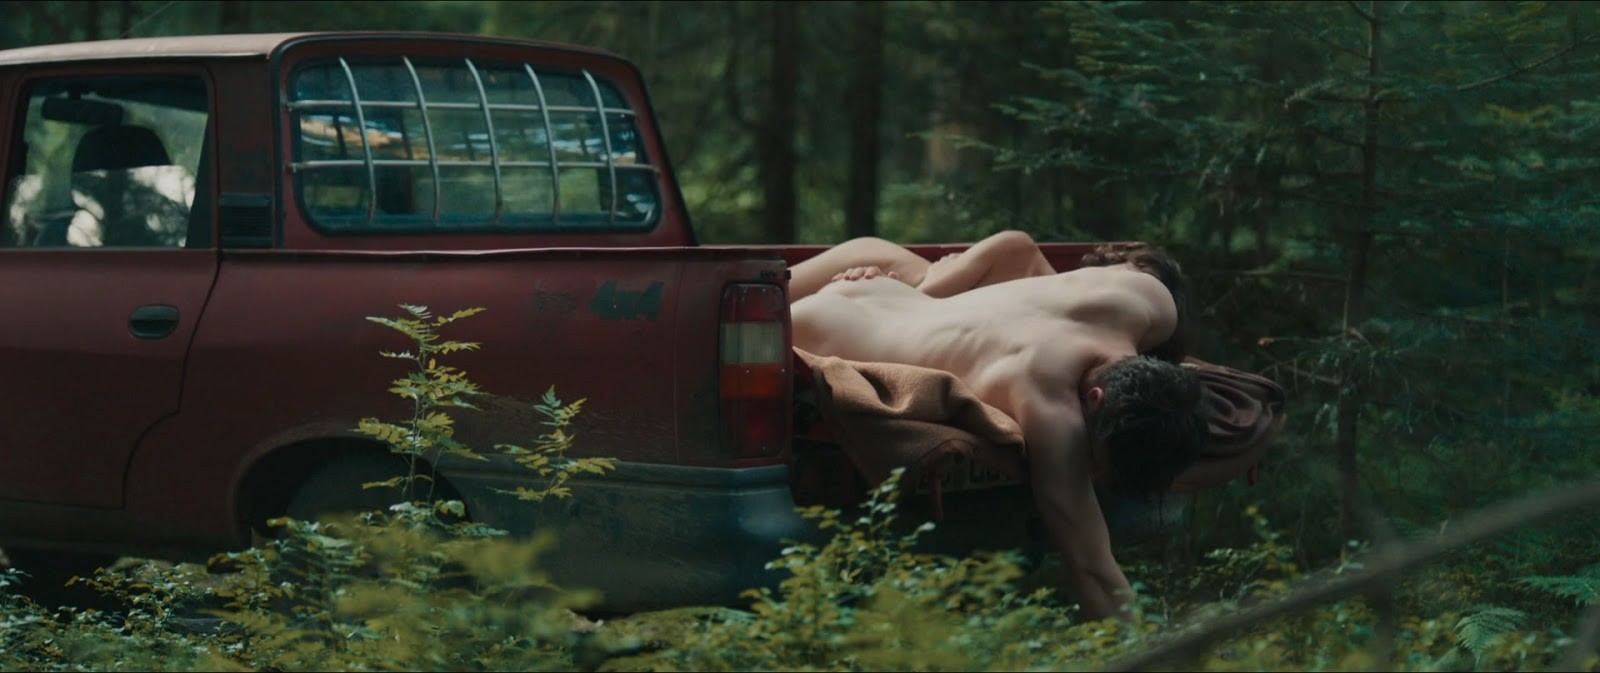 Jannis niewöhner nude - 🧡 Jonathan Bild 5 von 13 Moviepilot.de.